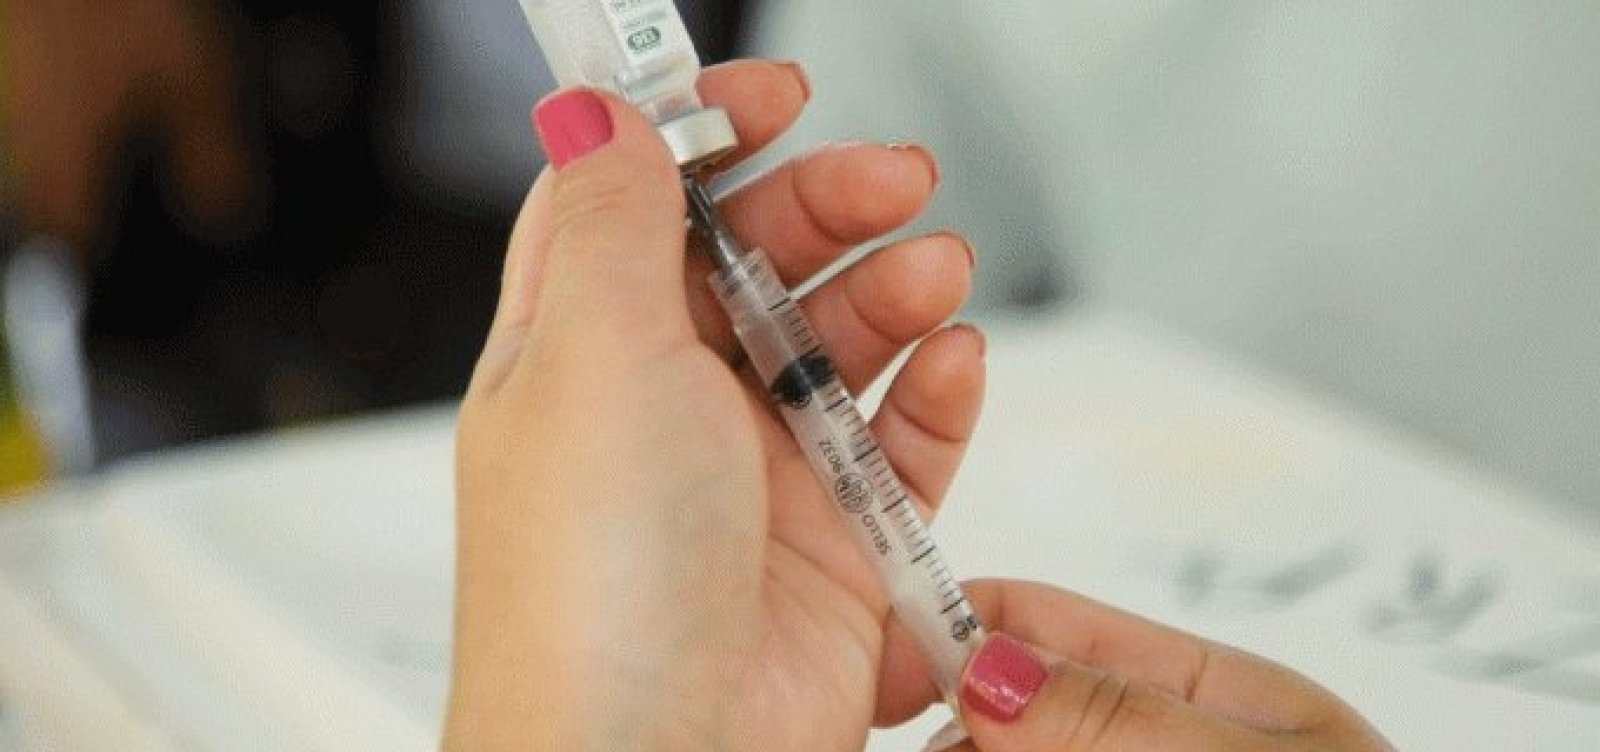 Cerca de 41 vacinas contra coronavírus estão sendo desenvolvidas